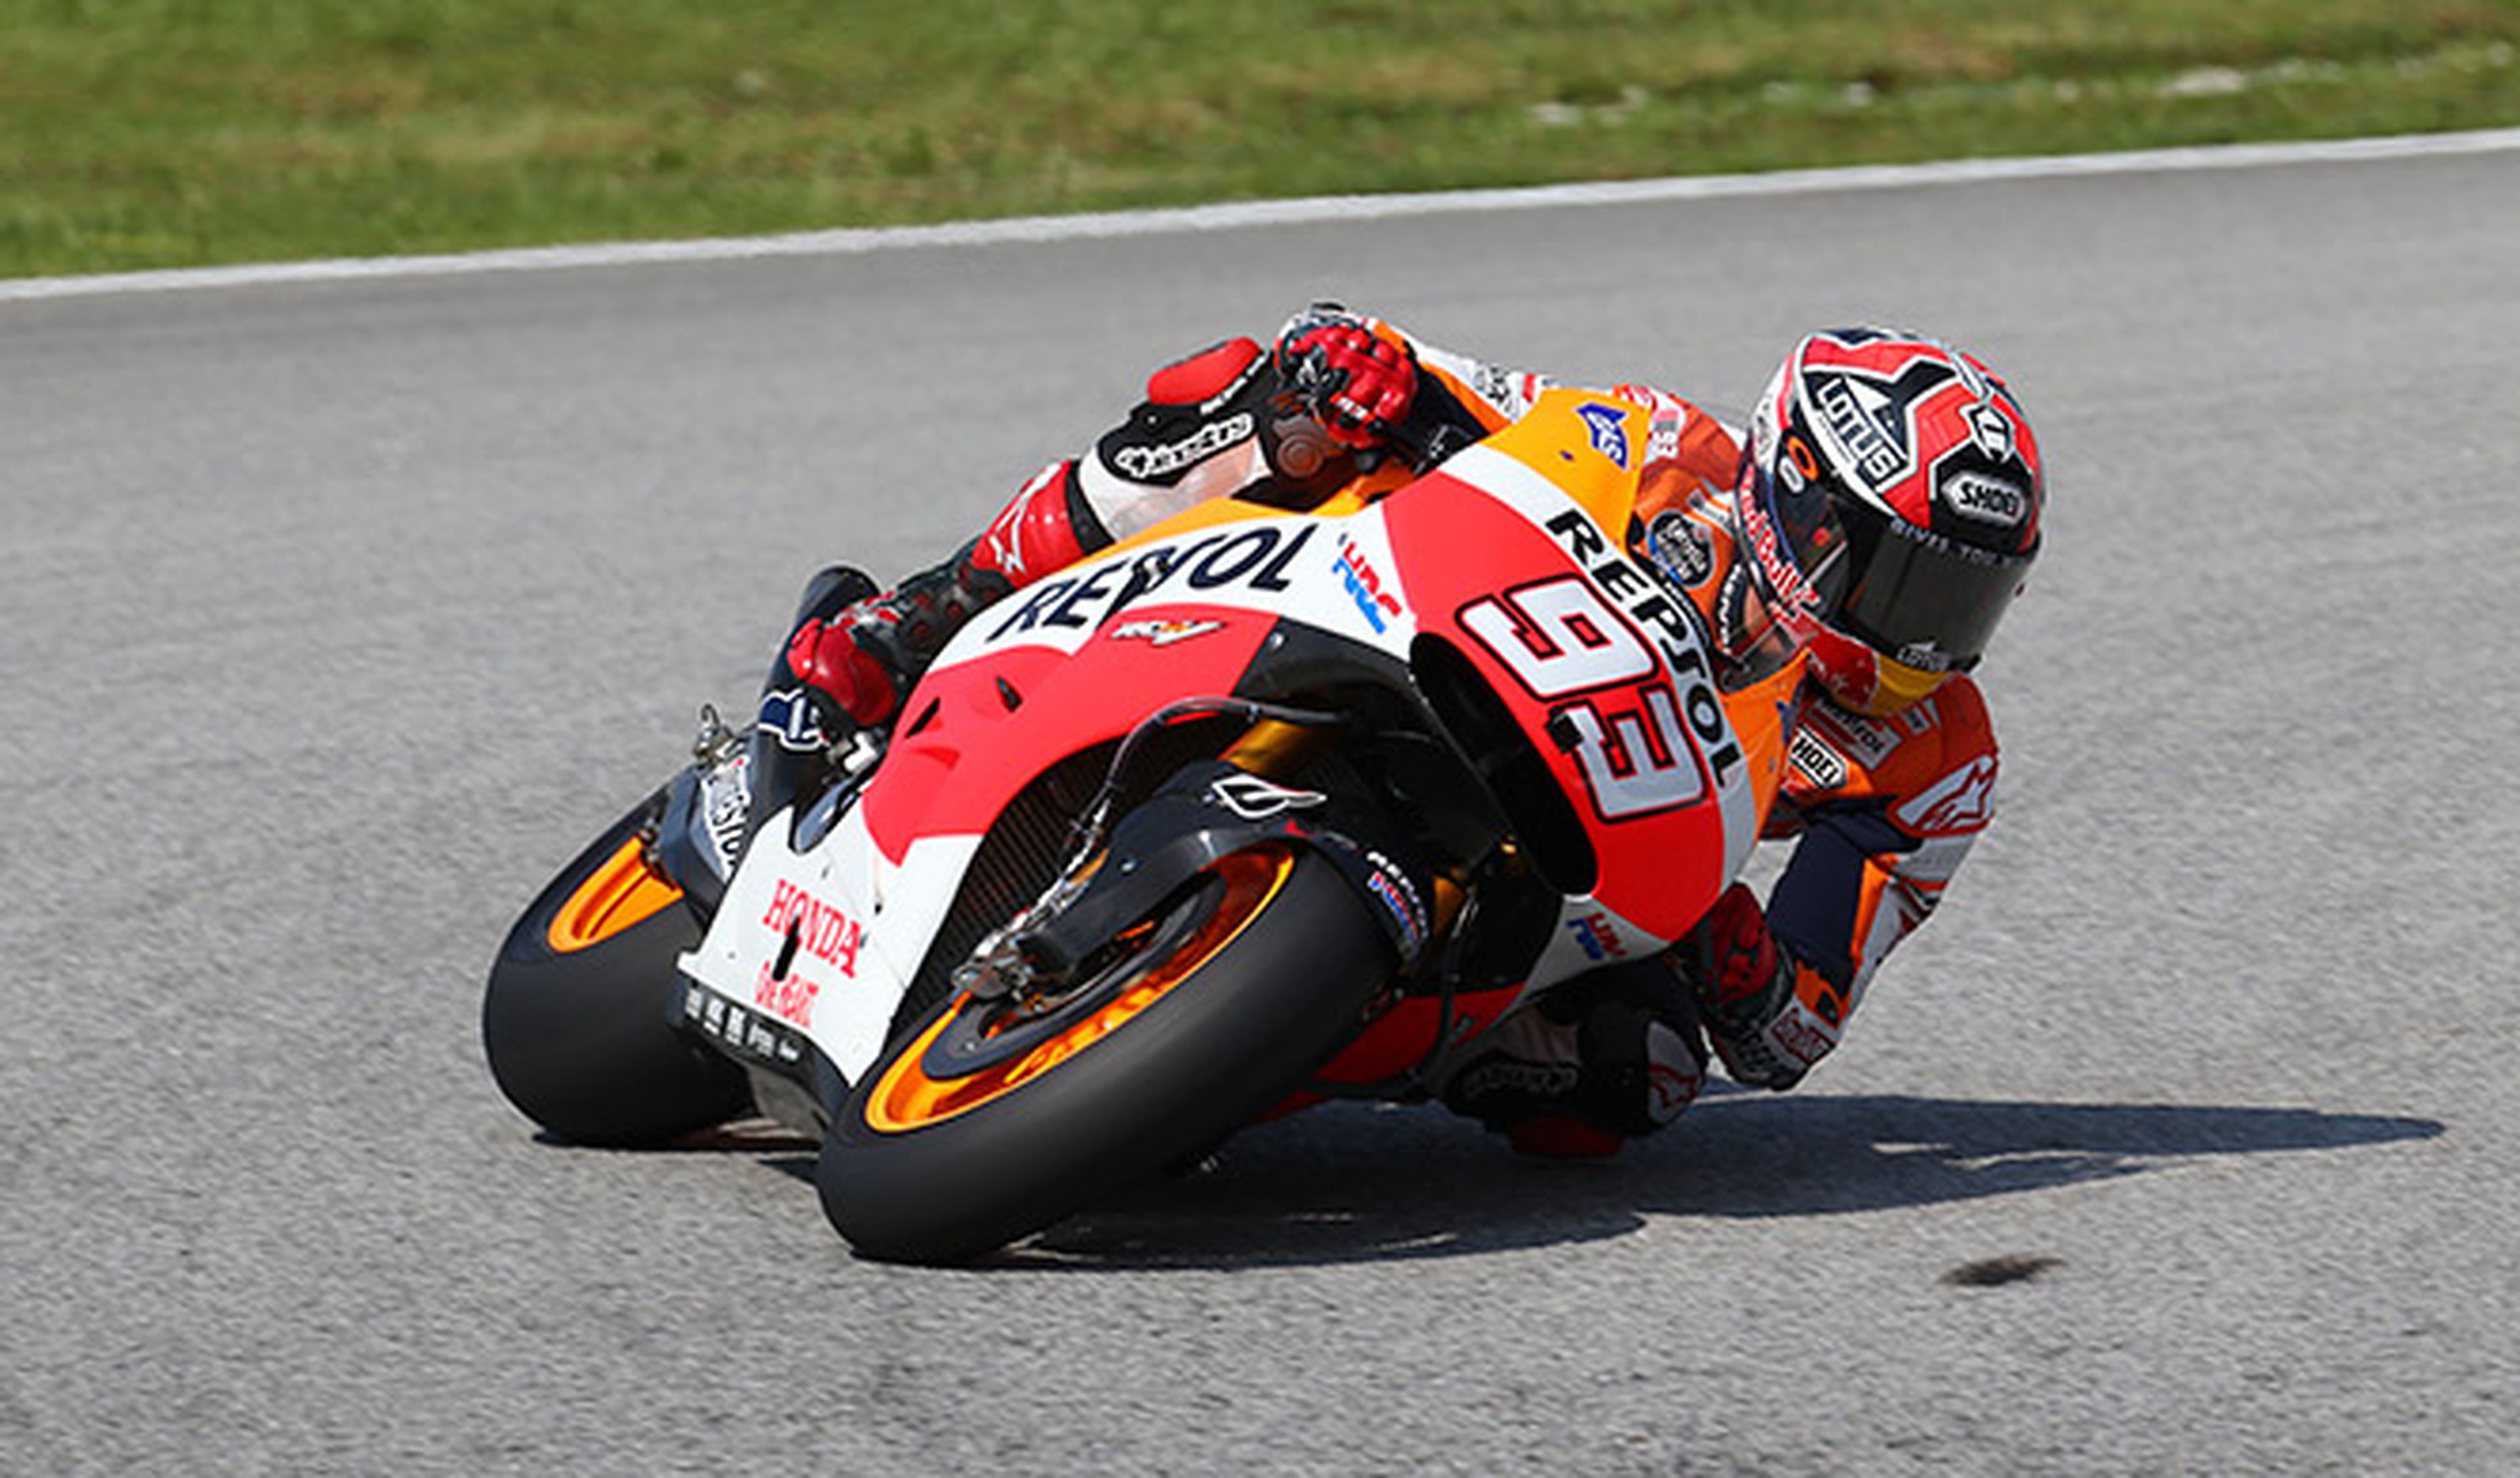 Clasificación MotoGP GP Malasia 2014: Márquez, de récord